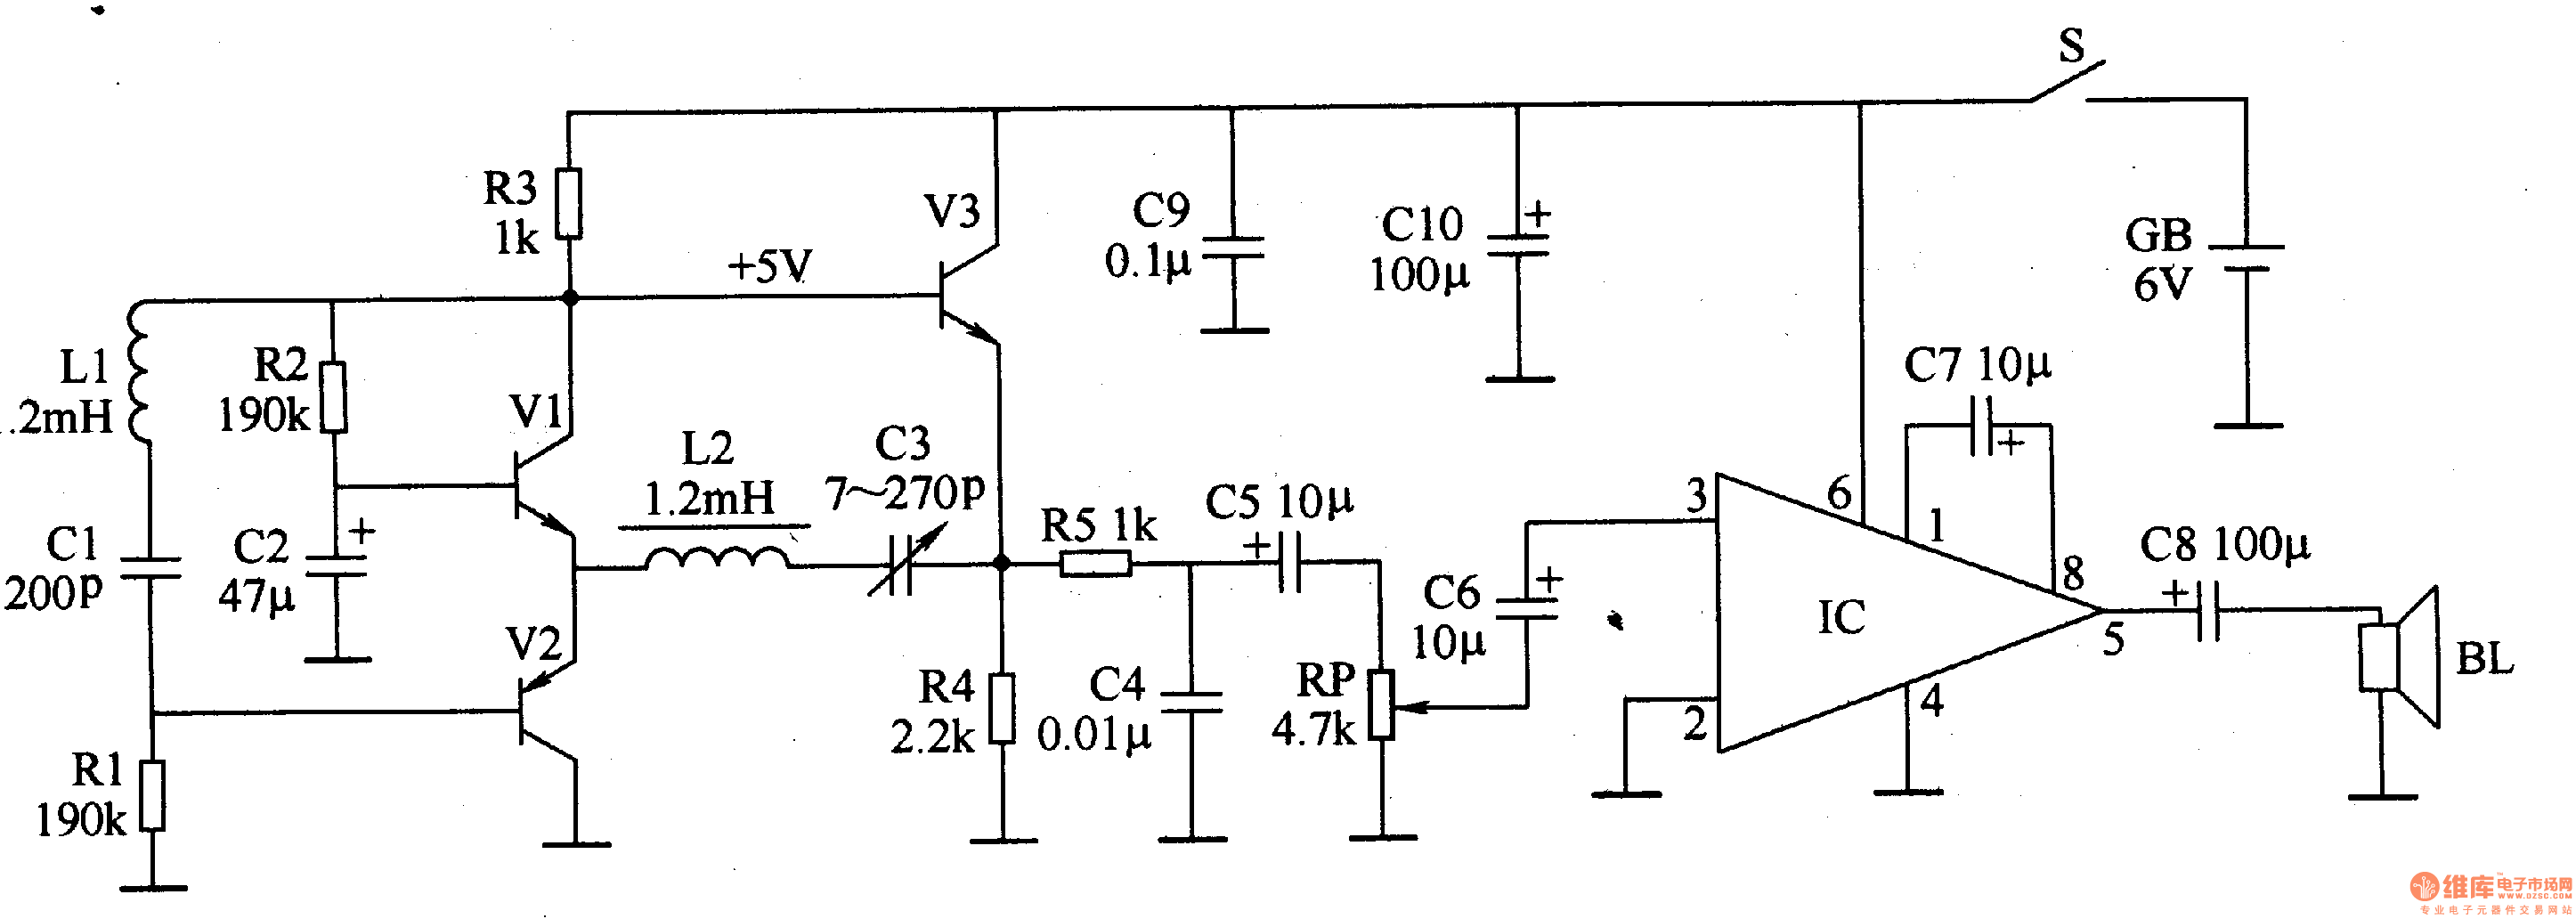 Metal detector 3 - Basic_Circuit - Circuit Diagram ...